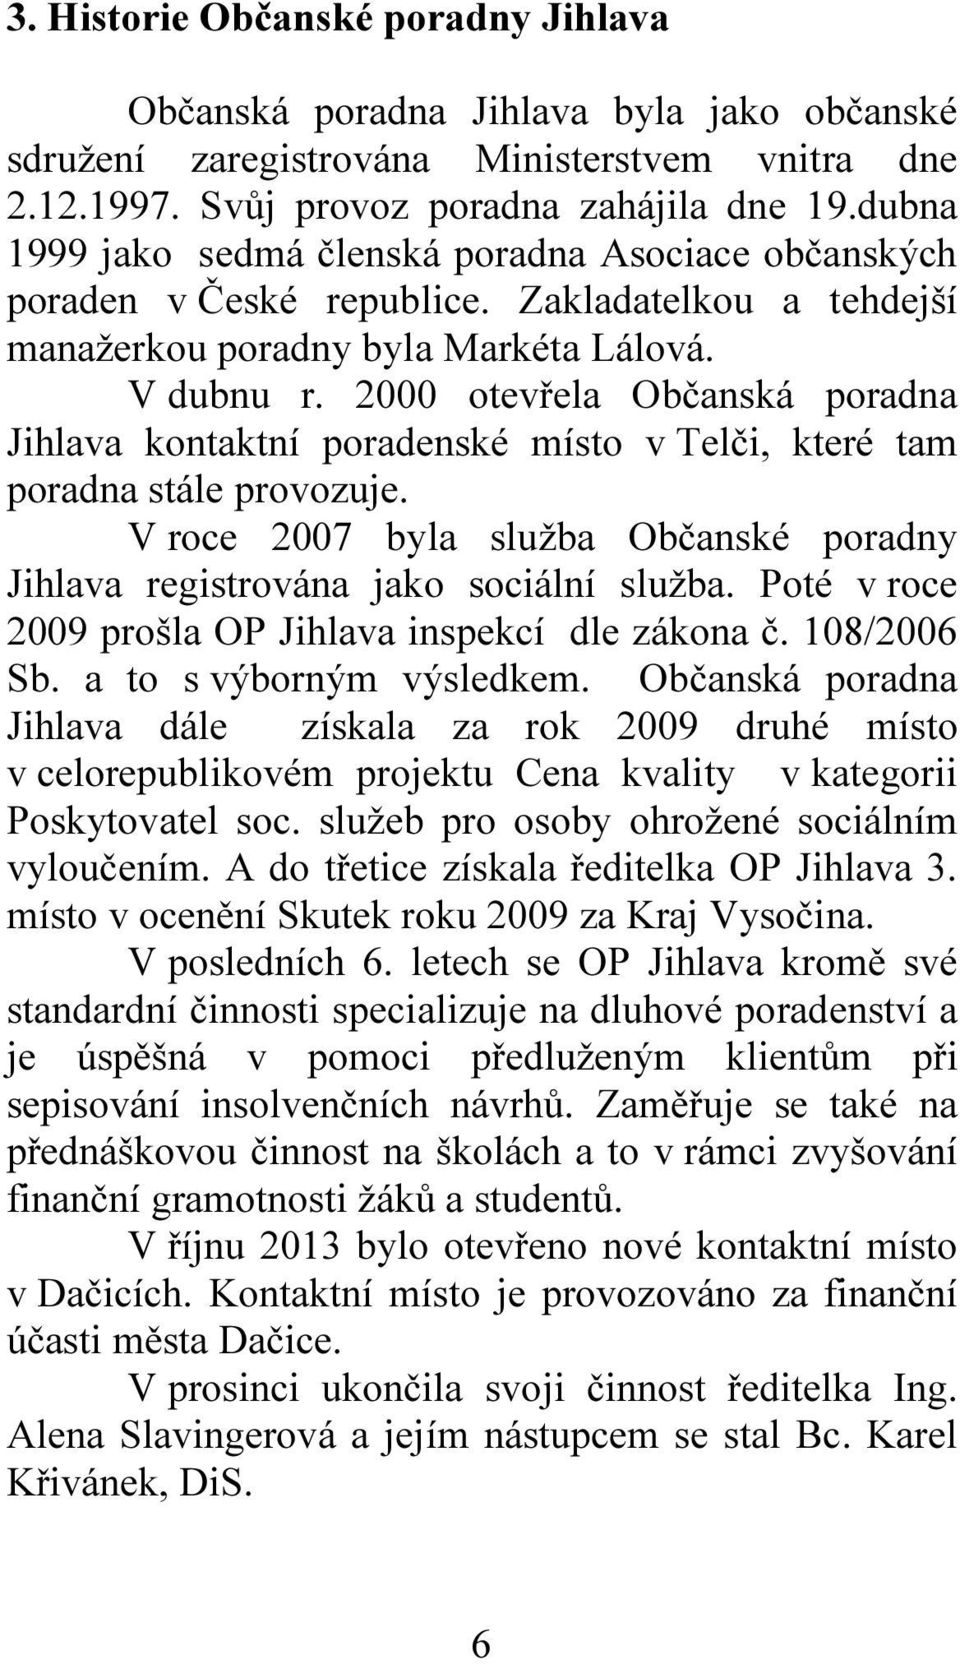 2000 otevřela Občanská poradna Jihlava kontaktní poradenské místo v Telči, které tam poradna stále provozuje. V roce 2007 byla služba Občanské poradny Jihlava registrována jako sociální služba.